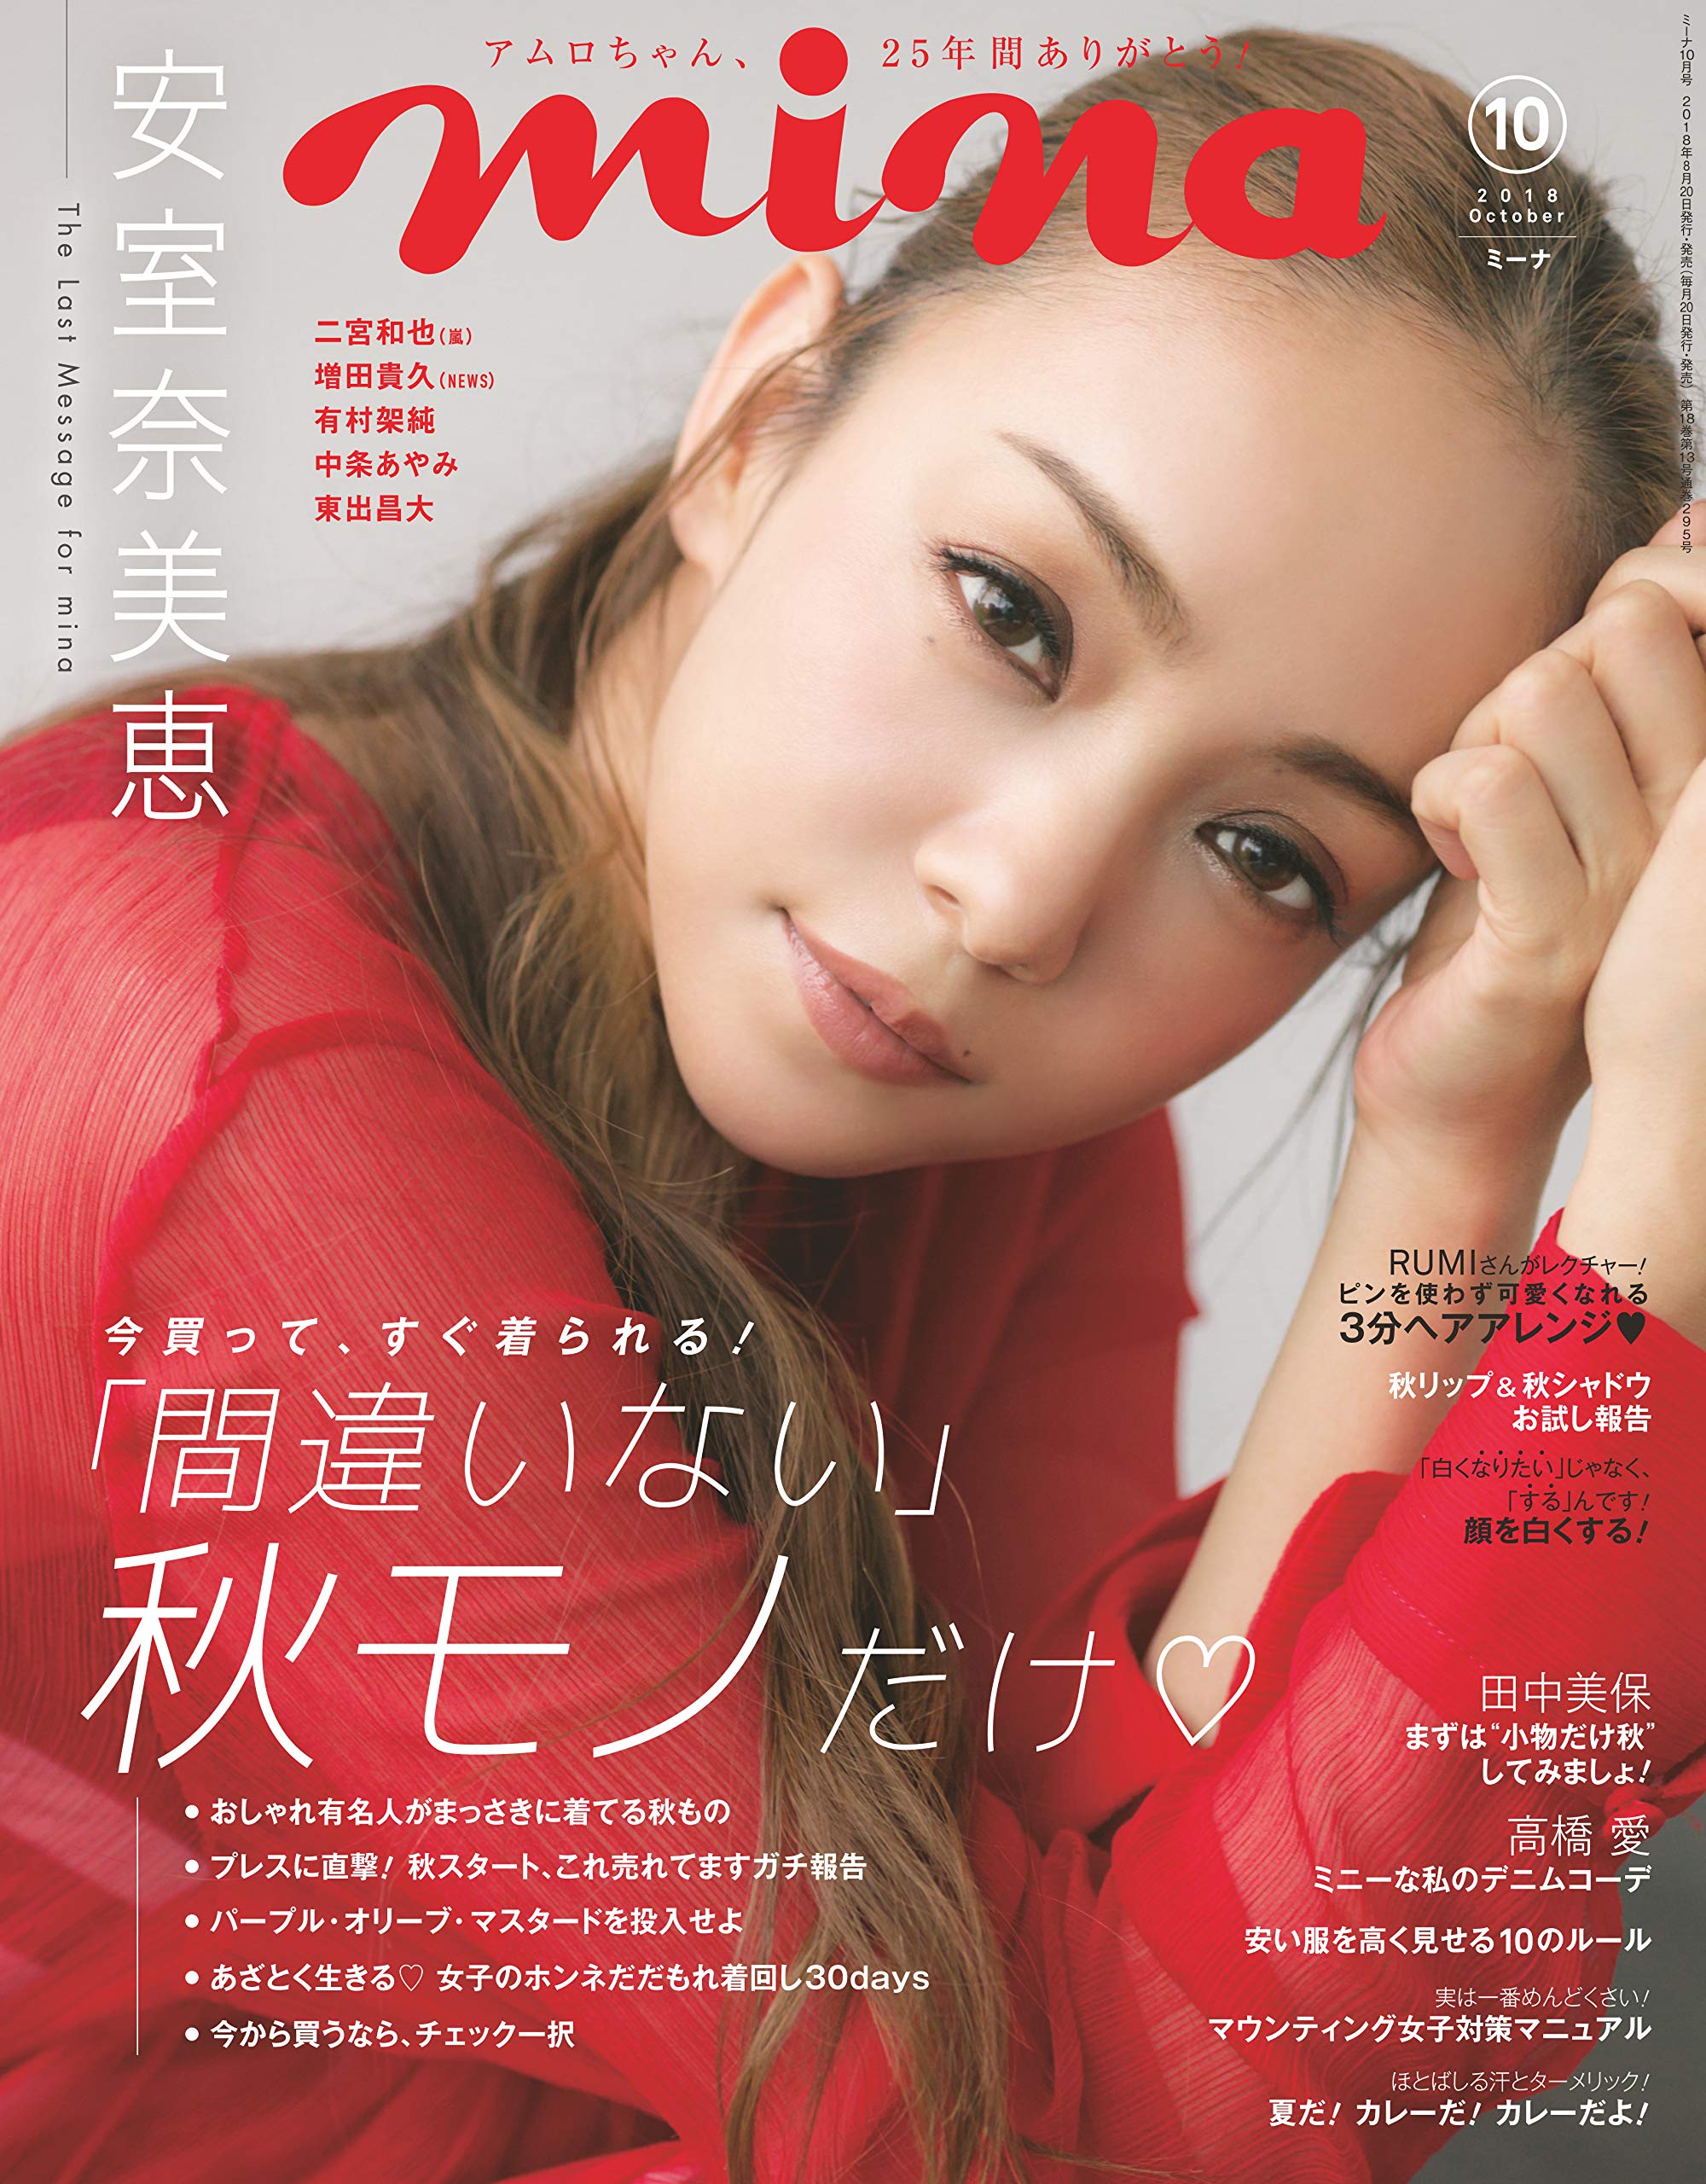 メディア掲載】mina2018年10月号「安室奈美恵さん」 8月20日発売